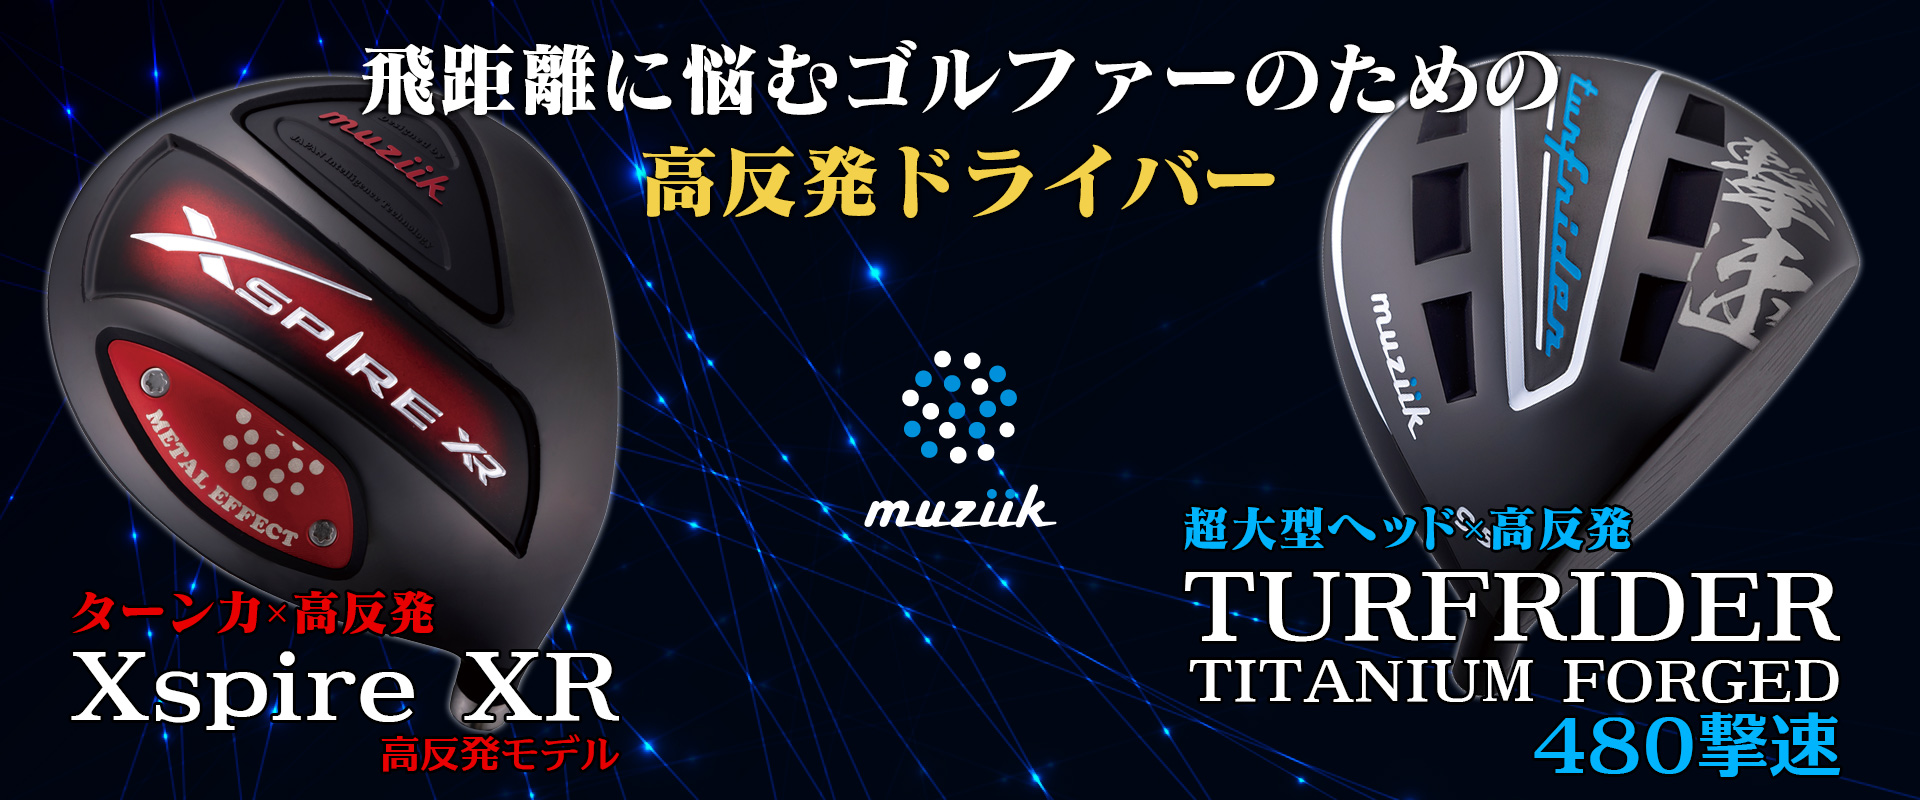 muziik 「Xspire XR」&「TURFRIDER FORGED TITANIUM 480撃速」